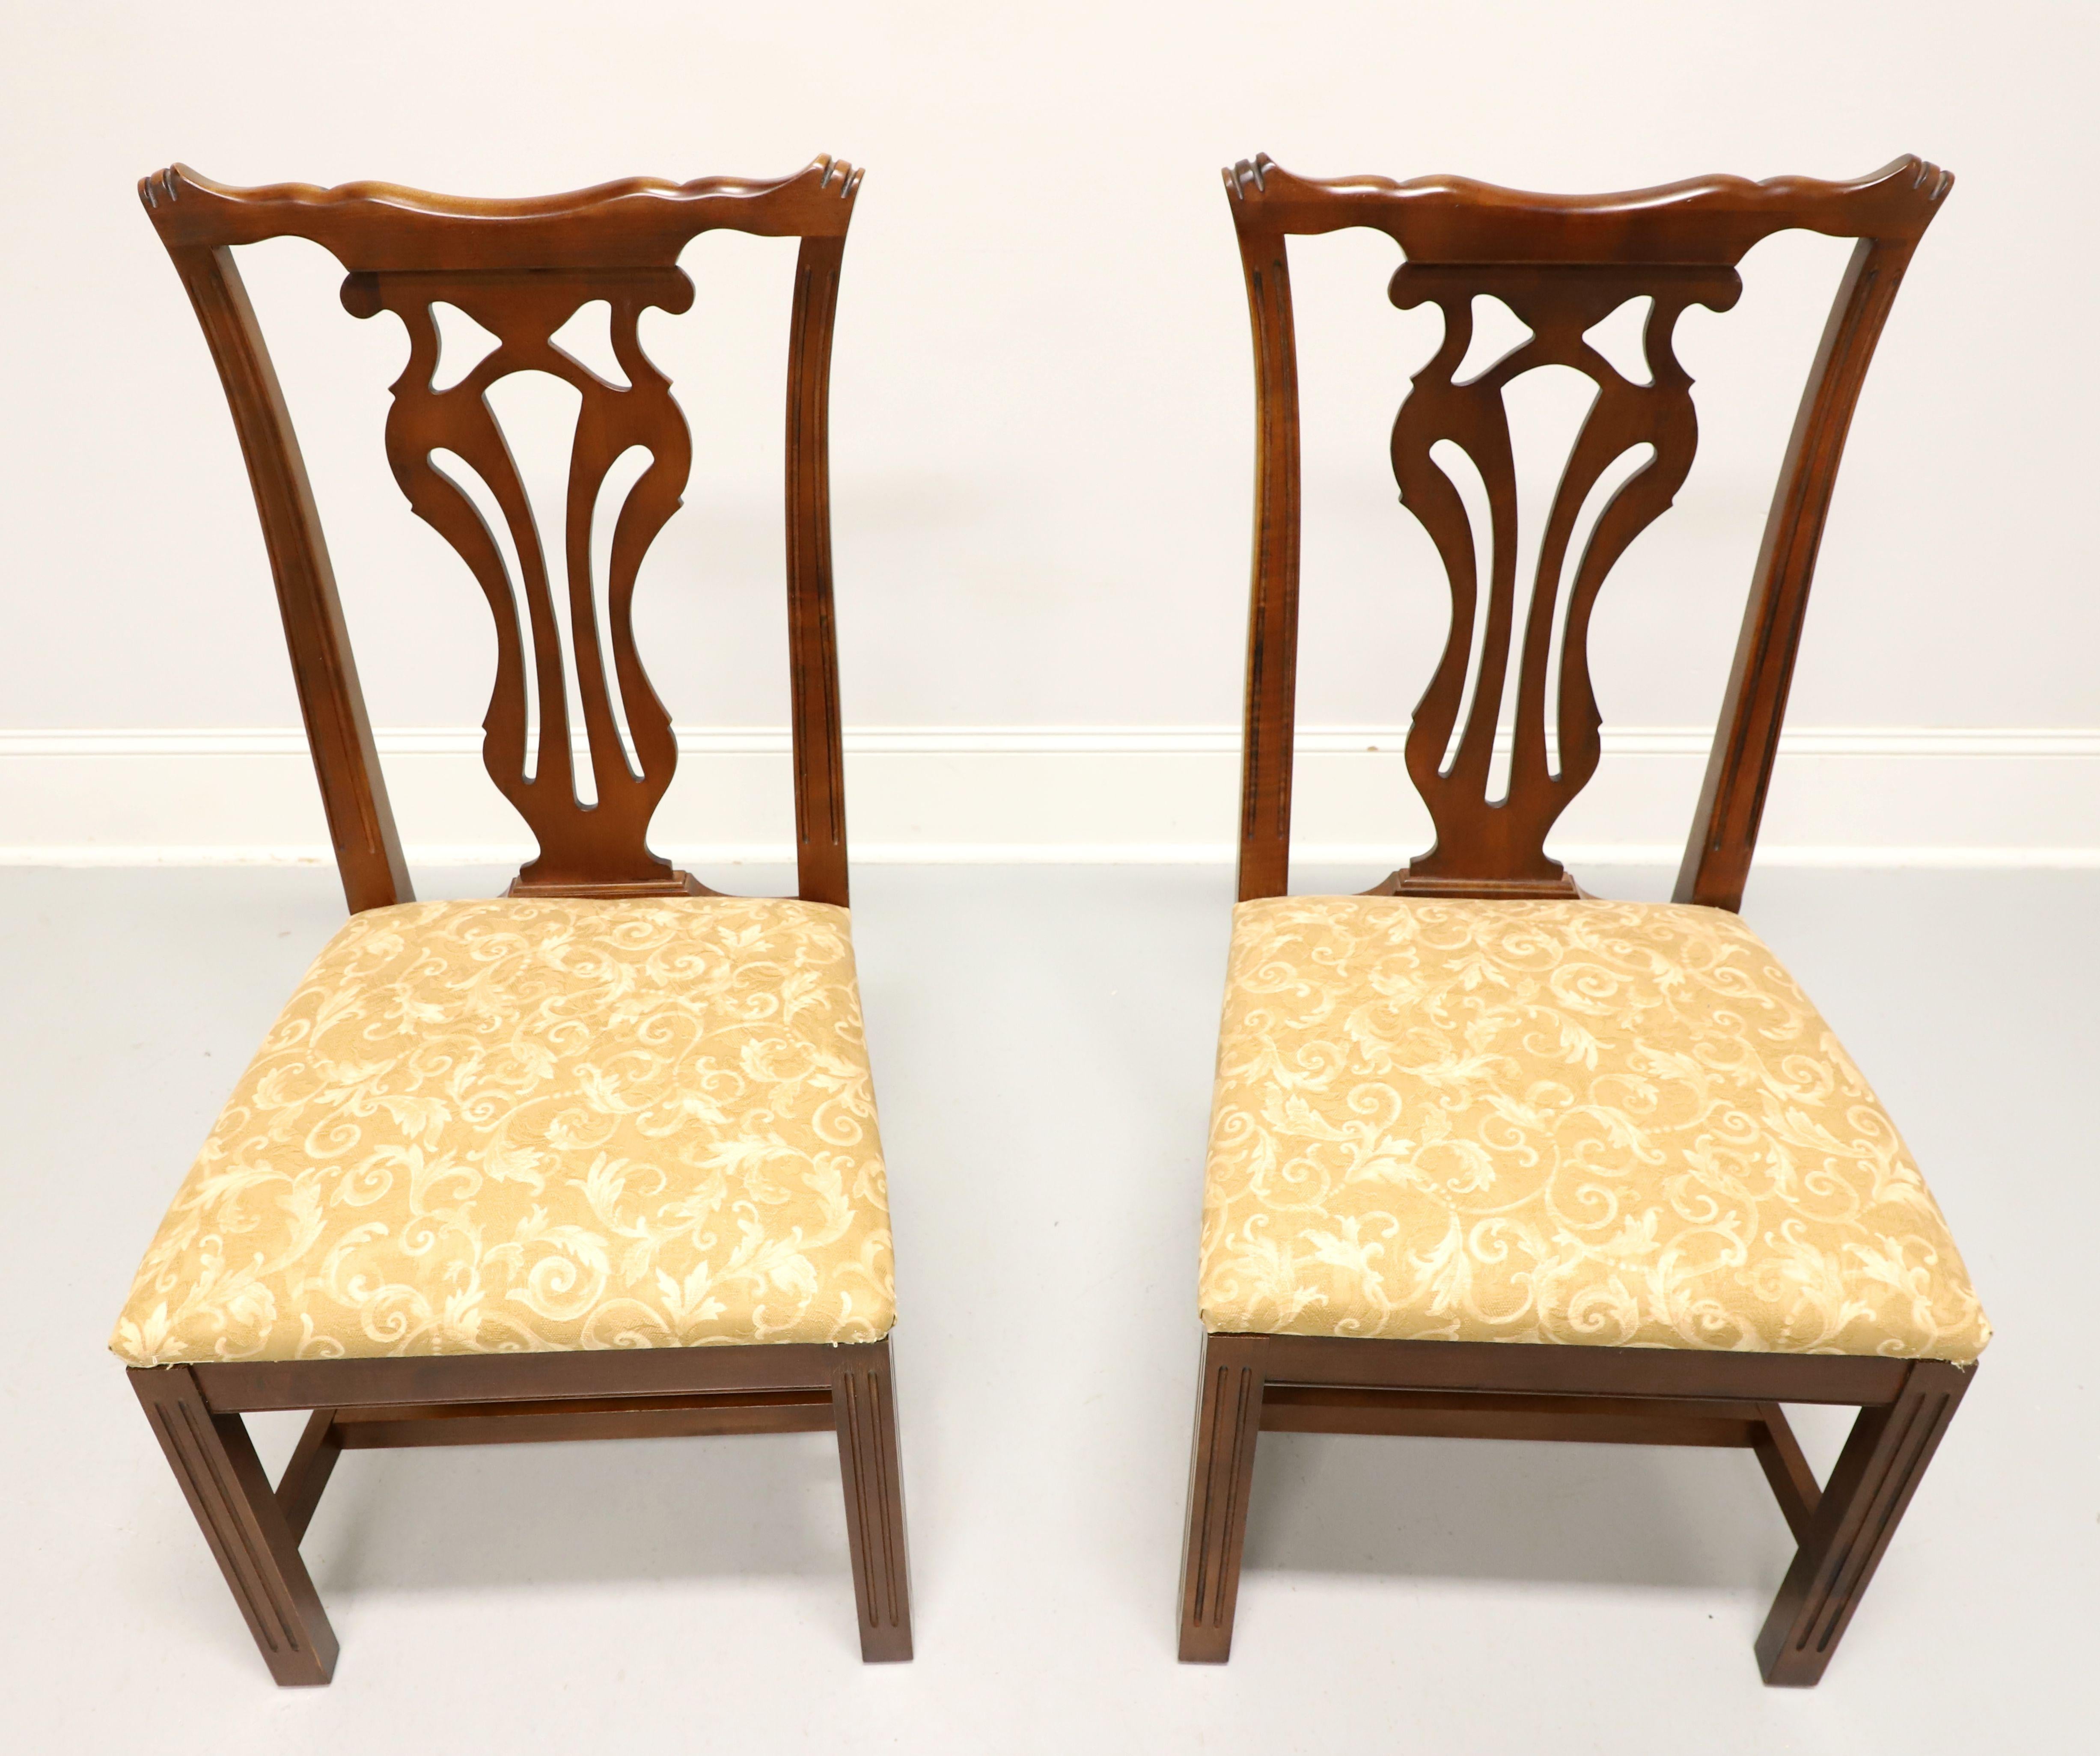 Paire de chaises d'appoint de style Chippendale par Knob Creek. Acajou avec dossiers sculptés, assise garnie de tissu brocardé or, piétement à entretoise et pieds droits. Fabriqué aux États-Unis, à la fin du 20e siècle.

Mesures :  Encombrement :